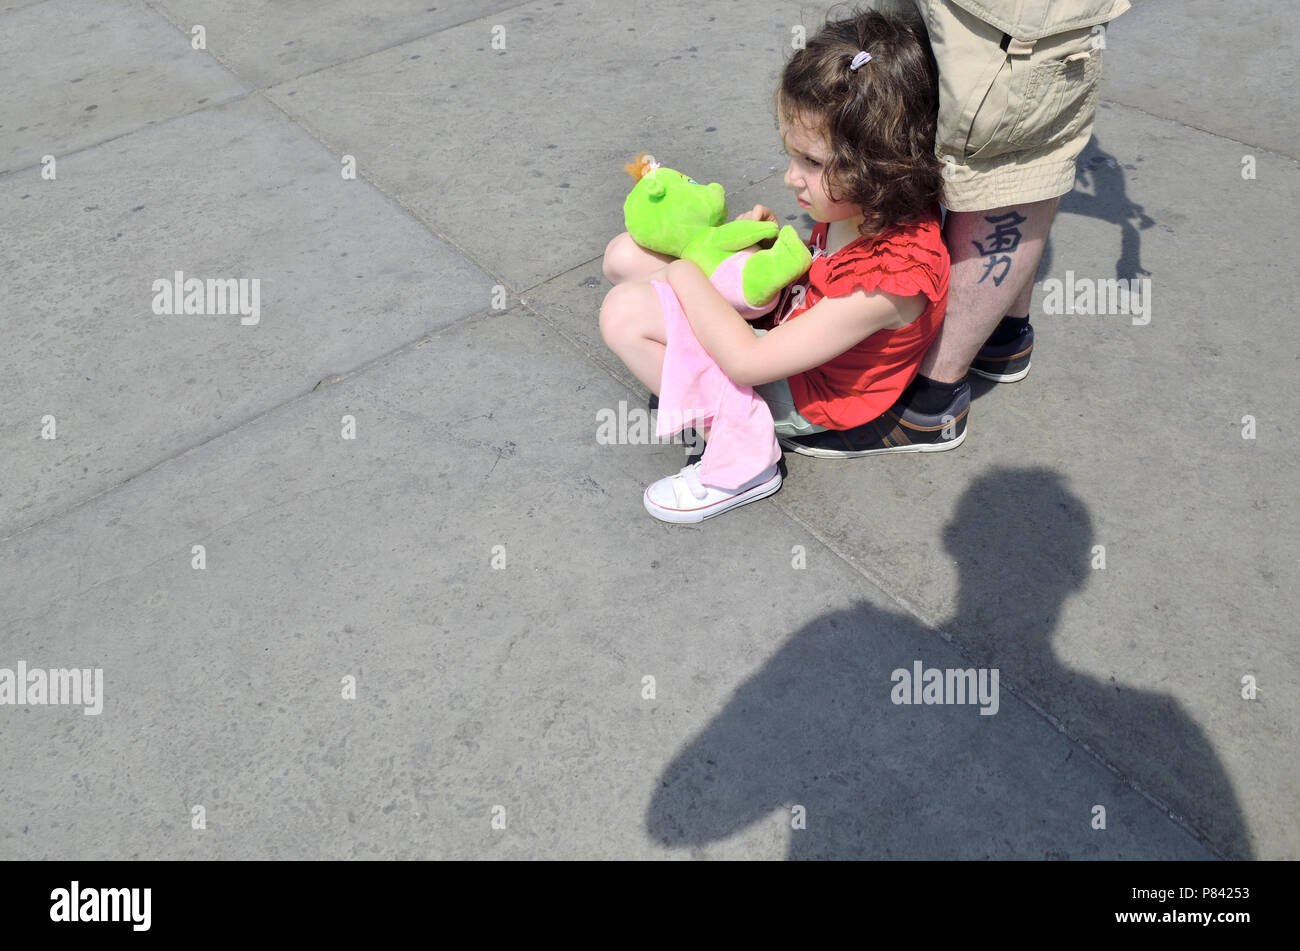 Jeune fille assise avec un jouet dans Trafalgar Square, Londres, Angleterre, Royaume-Uni. Appuyée sur son père, jambe tatouée Banque D'Images